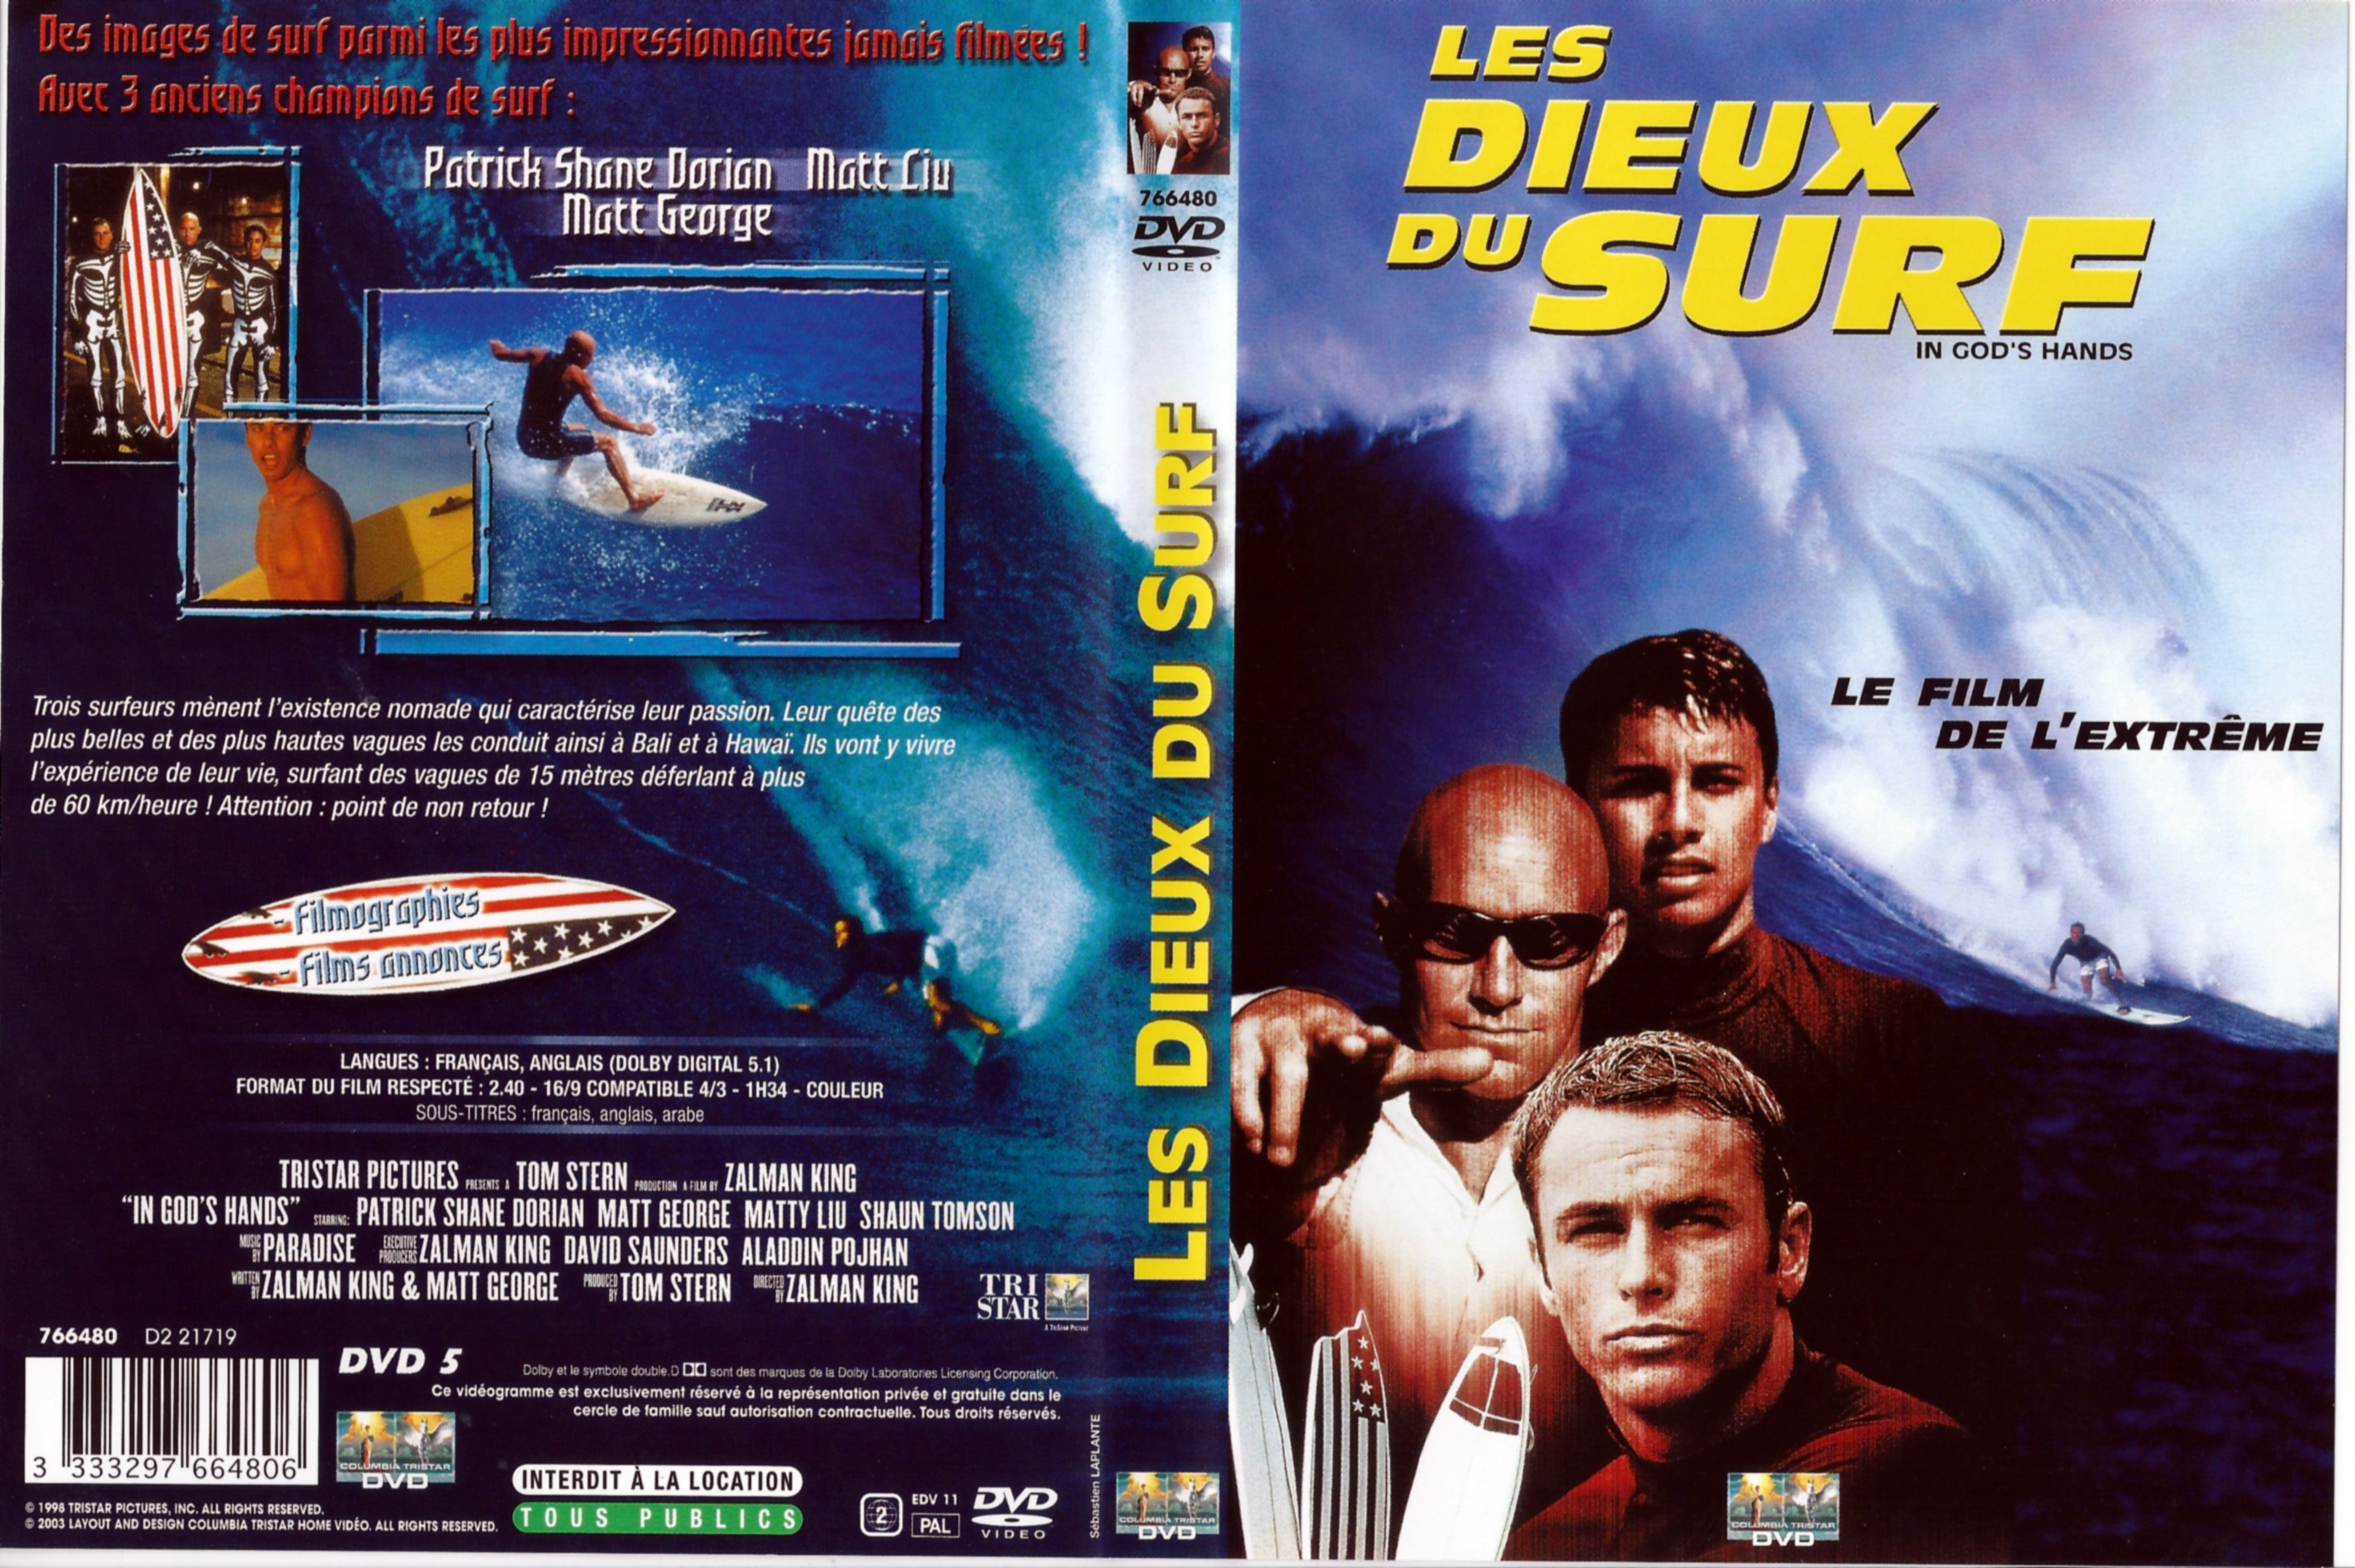 Jaquette DVD Les dieux du surf